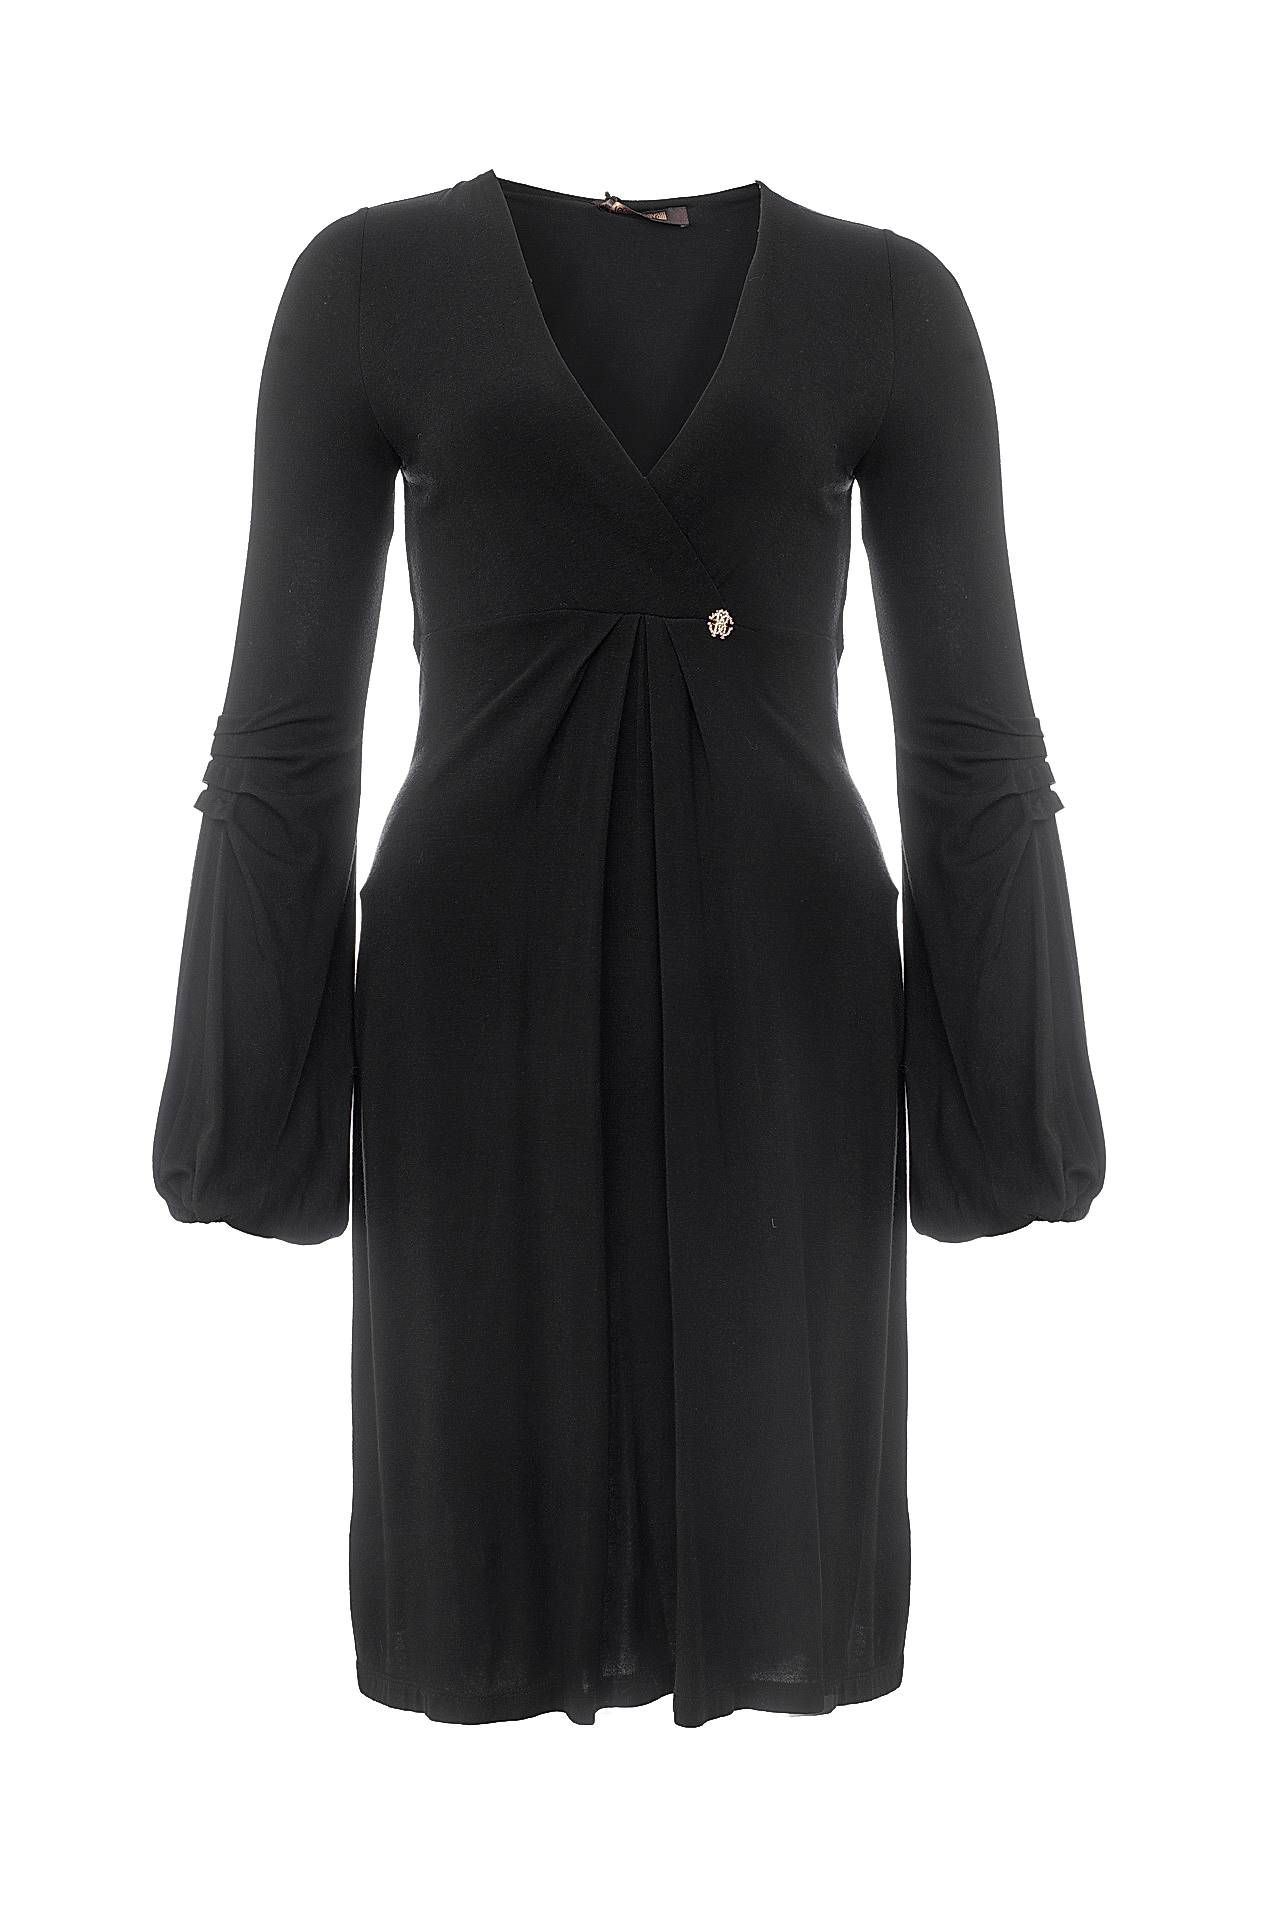 Одежда женская Платье ROBERTO CAVALLI (KPT121LW005/28). Купить за 34200 руб.